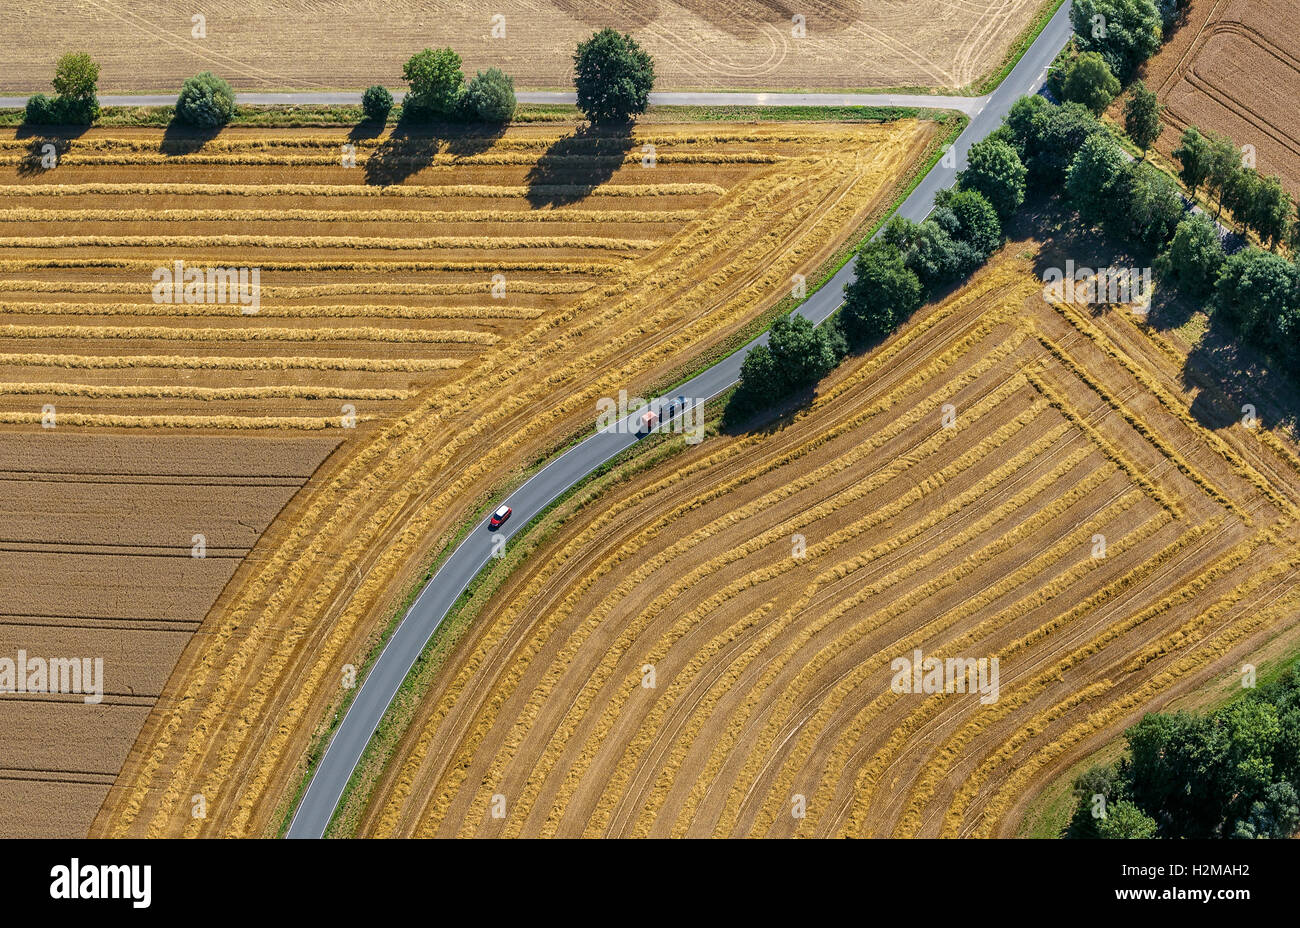 Fotografia aerea, su strada forcella, incrocio stradale, raccolti i campi, strade di campagna, curva, Welver, Basso Reno, Foto Stock